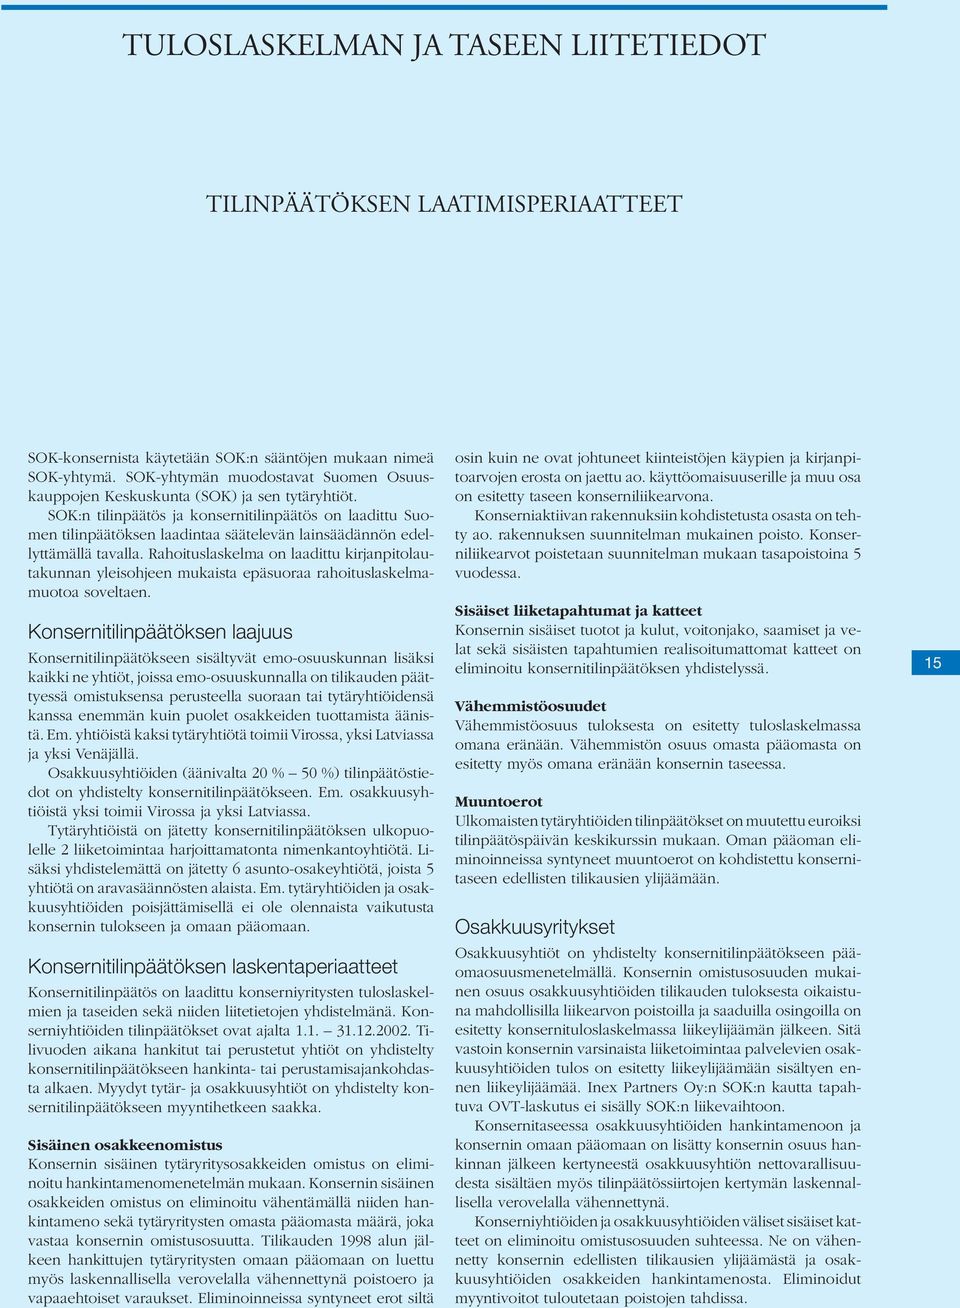 SOK:n tilinpäätös ja konsernitilinpäätös on laadittu Suomen tilinpäätöksen laadintaa säätelevän lainsäädännön edellyttämällä tavalla.